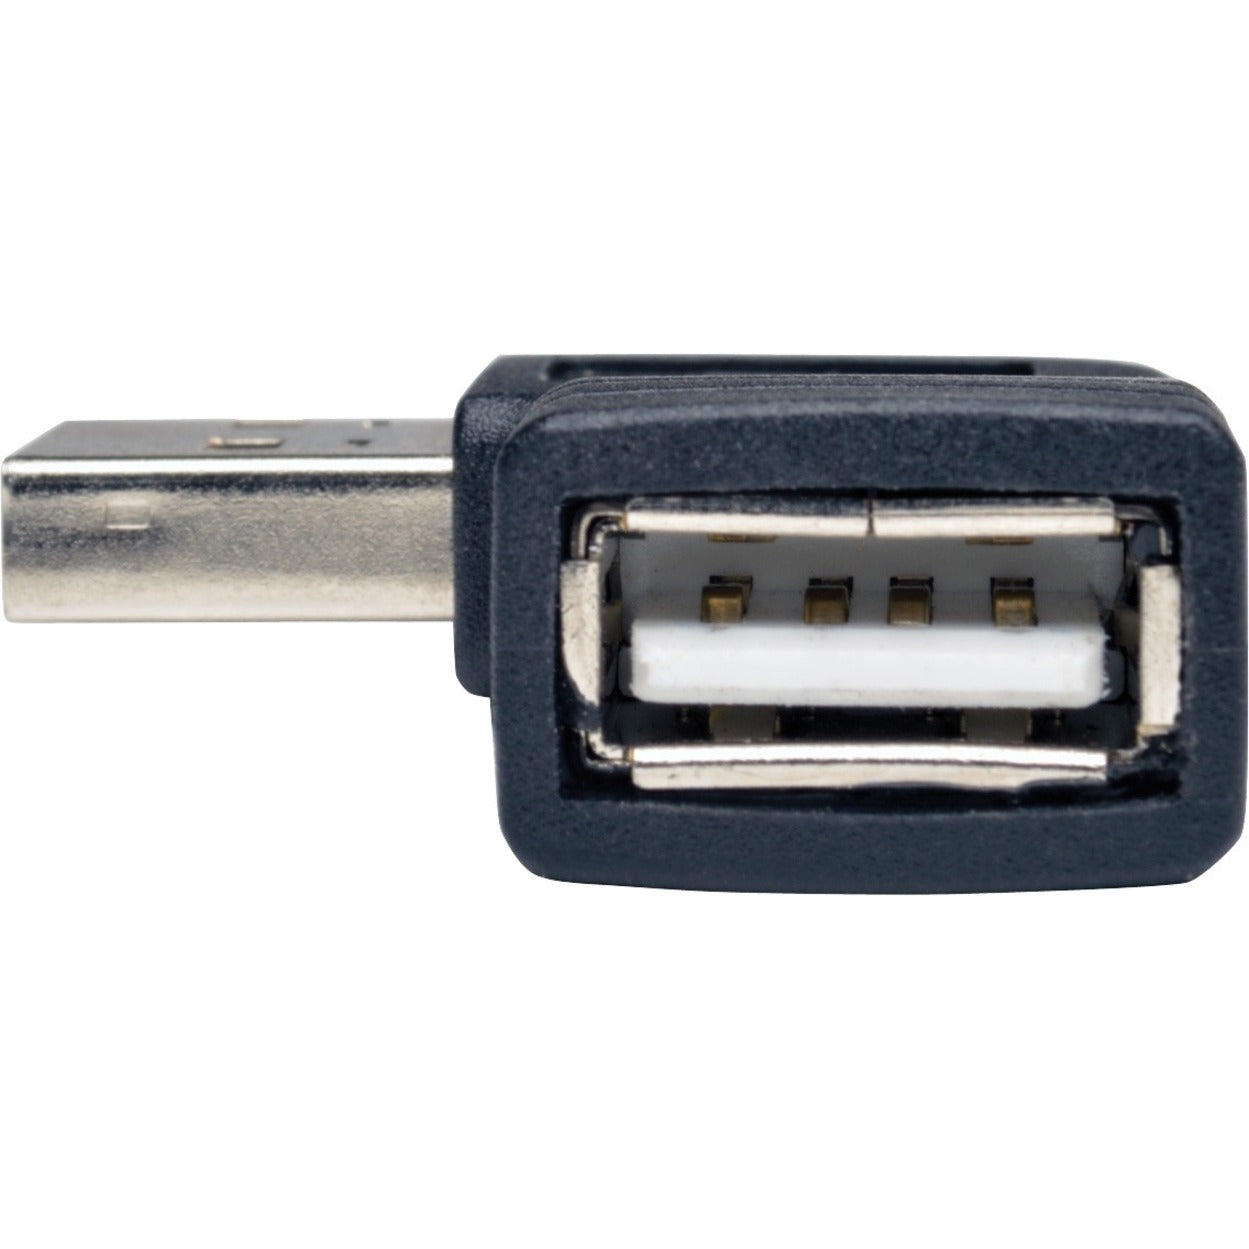 Tripp Lite UR024-000-RA USB Data Transfer Adattatore Connettore a Angolo Retto Stampato Placcato Oro